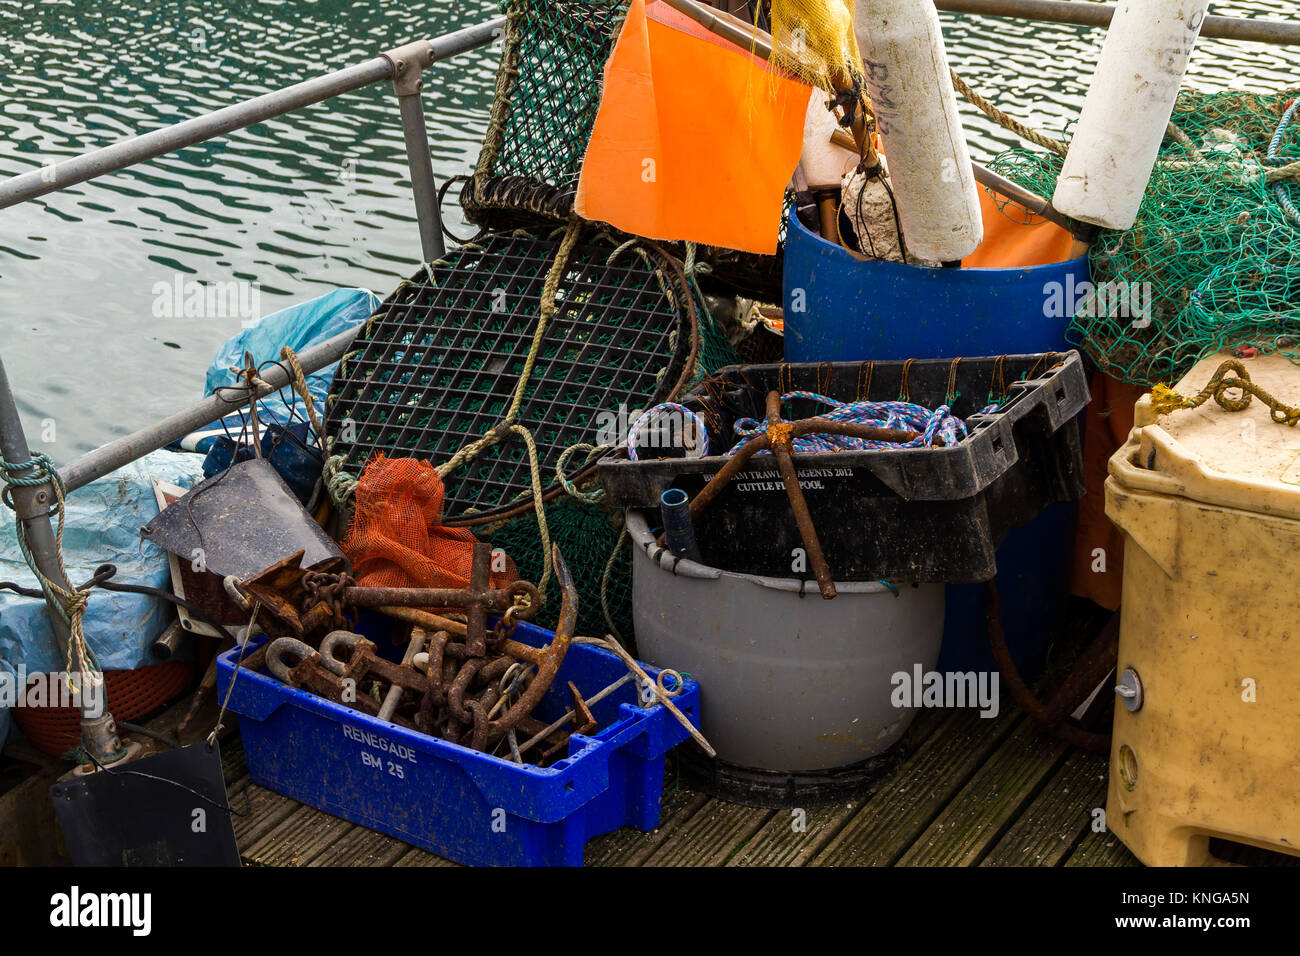 Allgemeine Boot und Angeln Industrie anlagen im Wasser aufgetürmt am Hafen von Brixham. Brixham, Torbay, Devon, Großbritannien Stockfoto